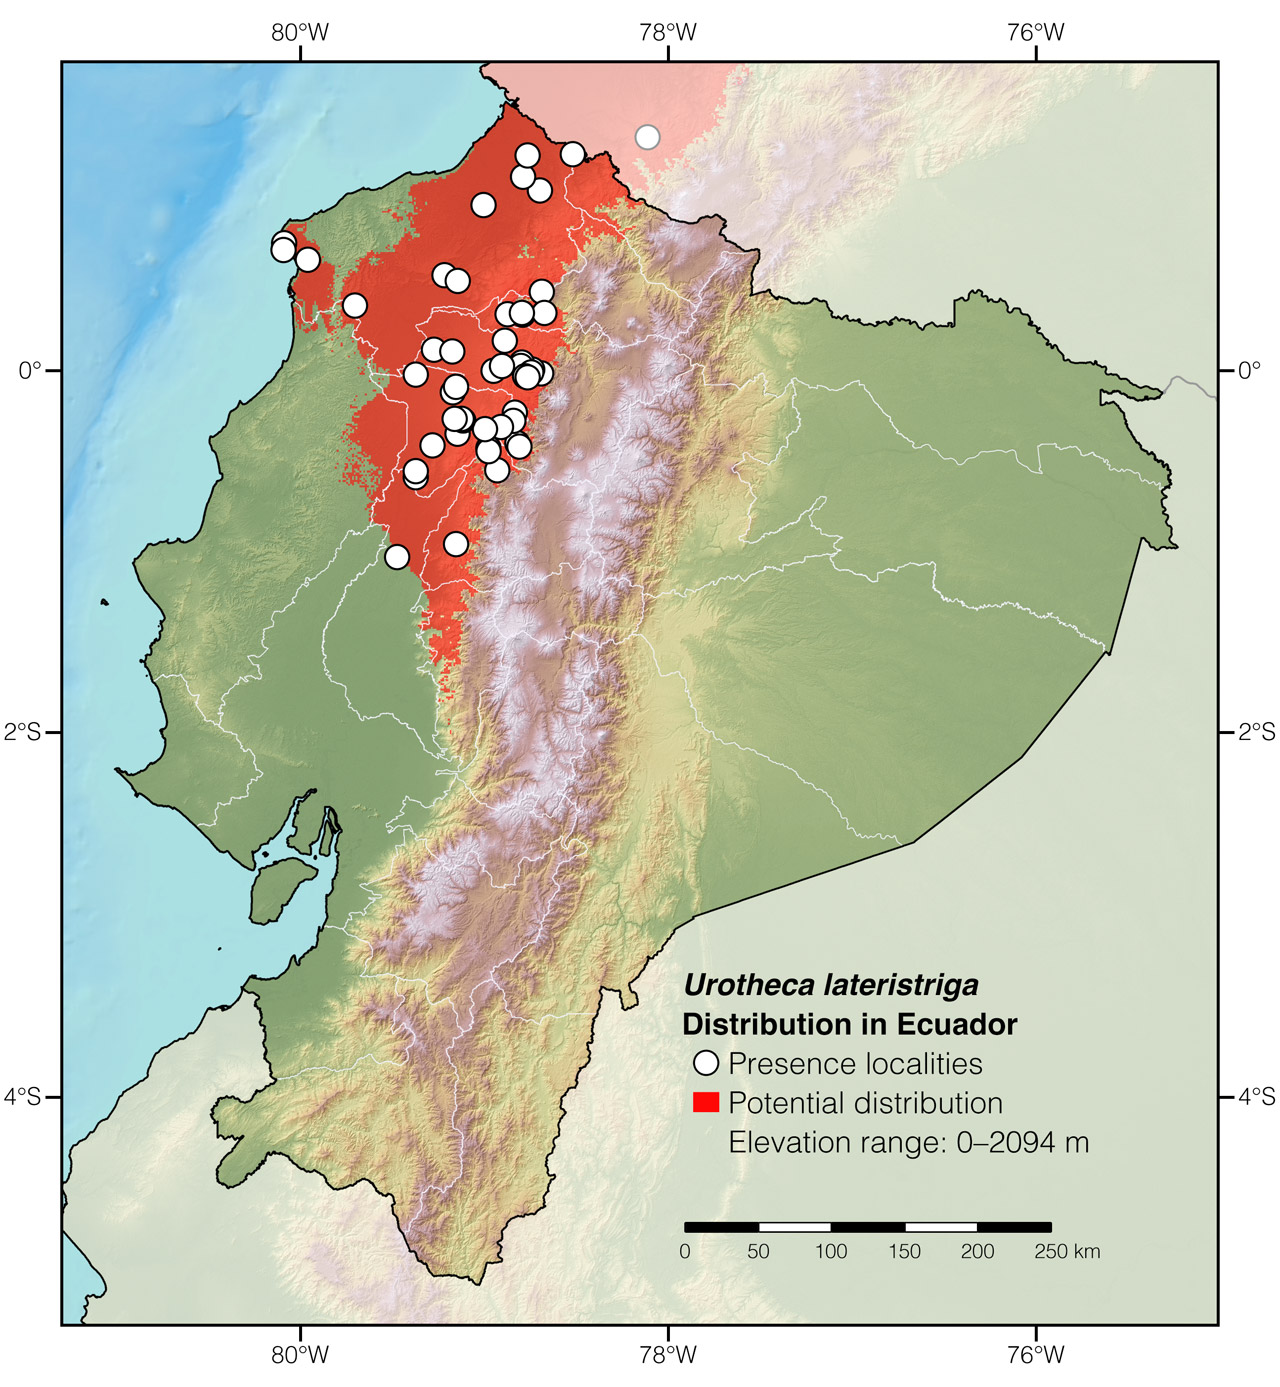 Distribution of Urotheca lateristriga in Ecuador